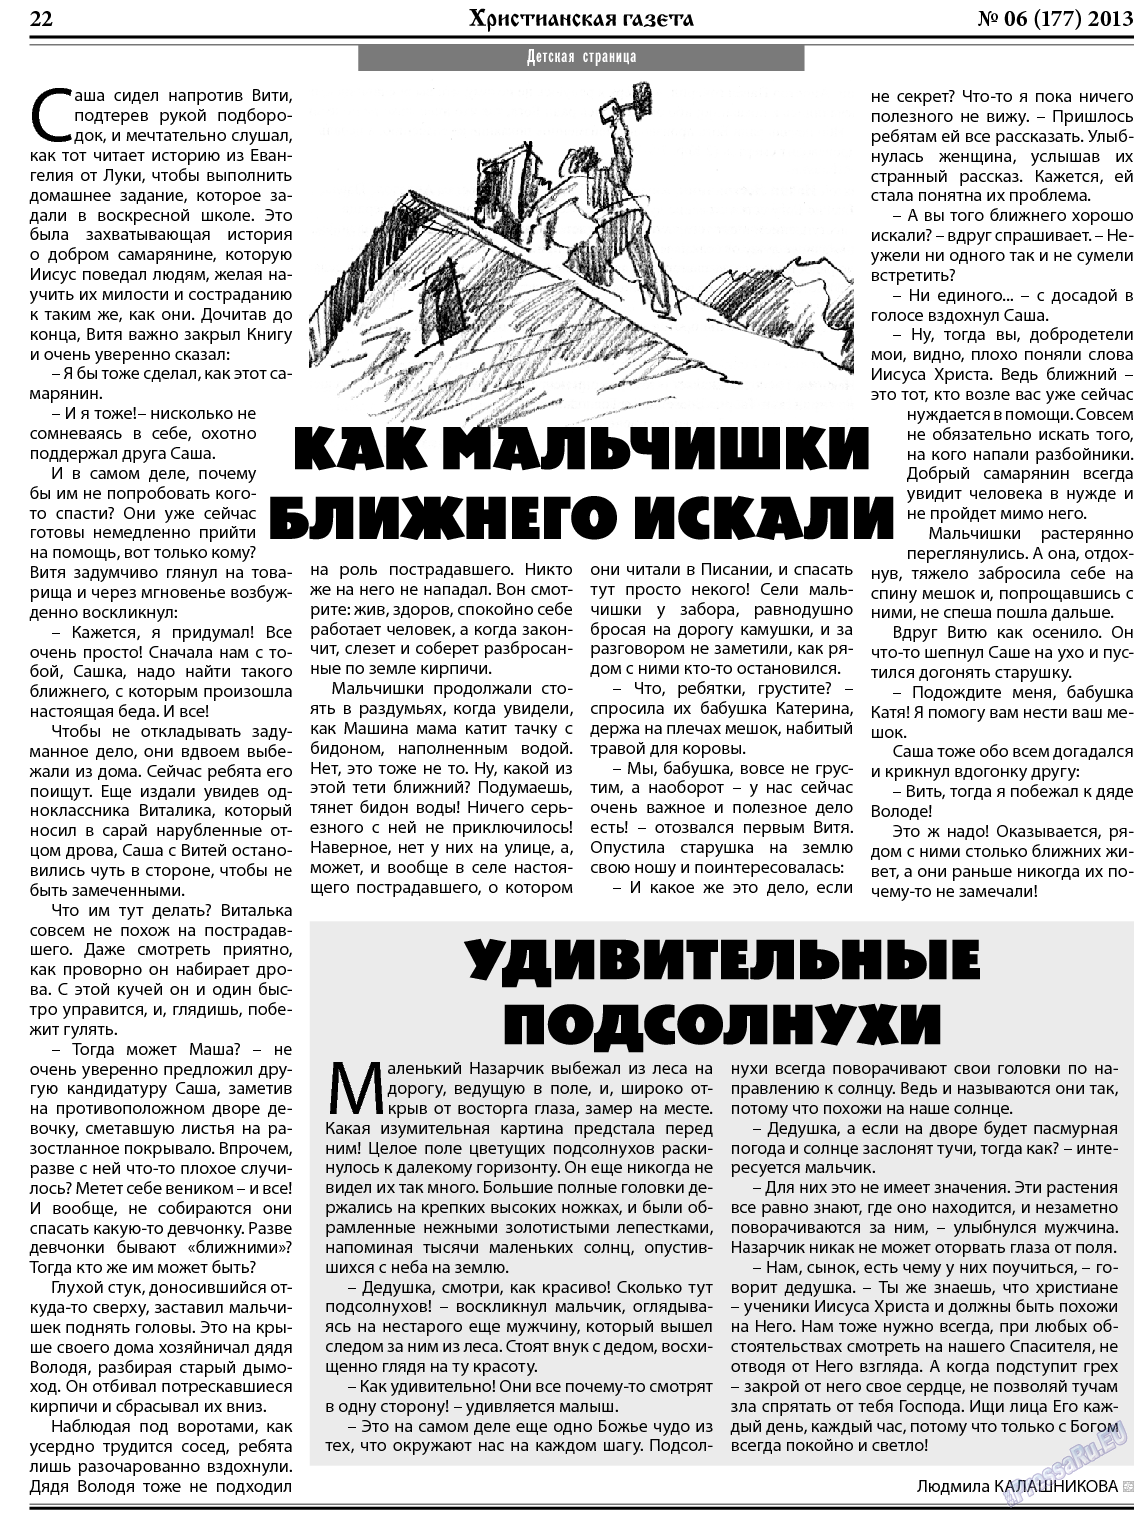 Христианская газета, газета. 2013 №6 стр.30